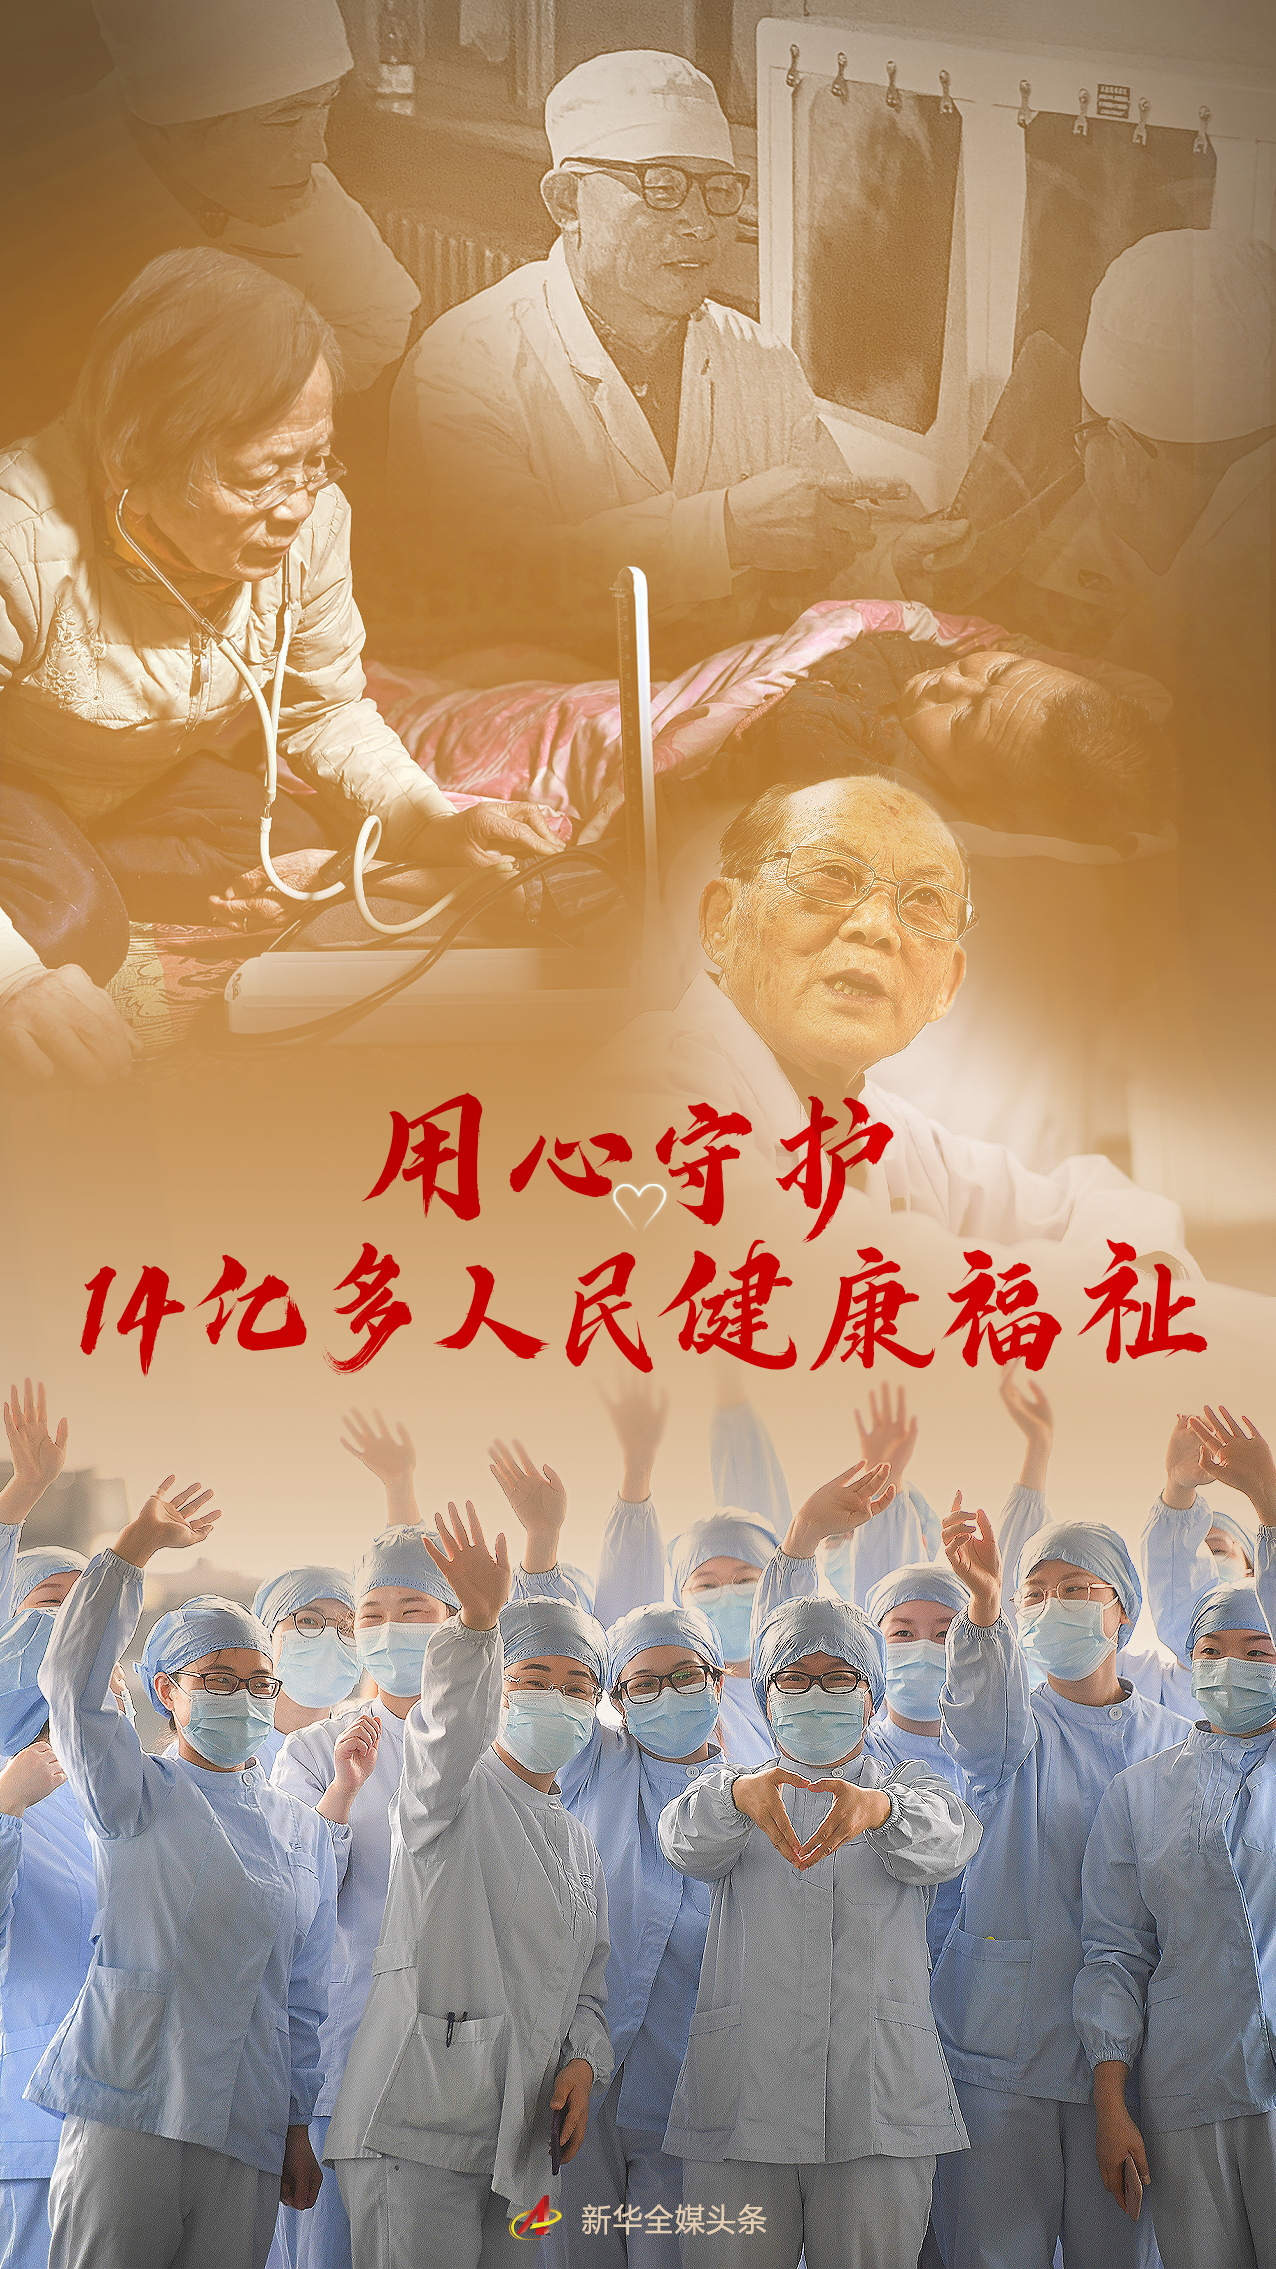 用心守护14亿多人民健康福祉——写在第五个中国医师节0